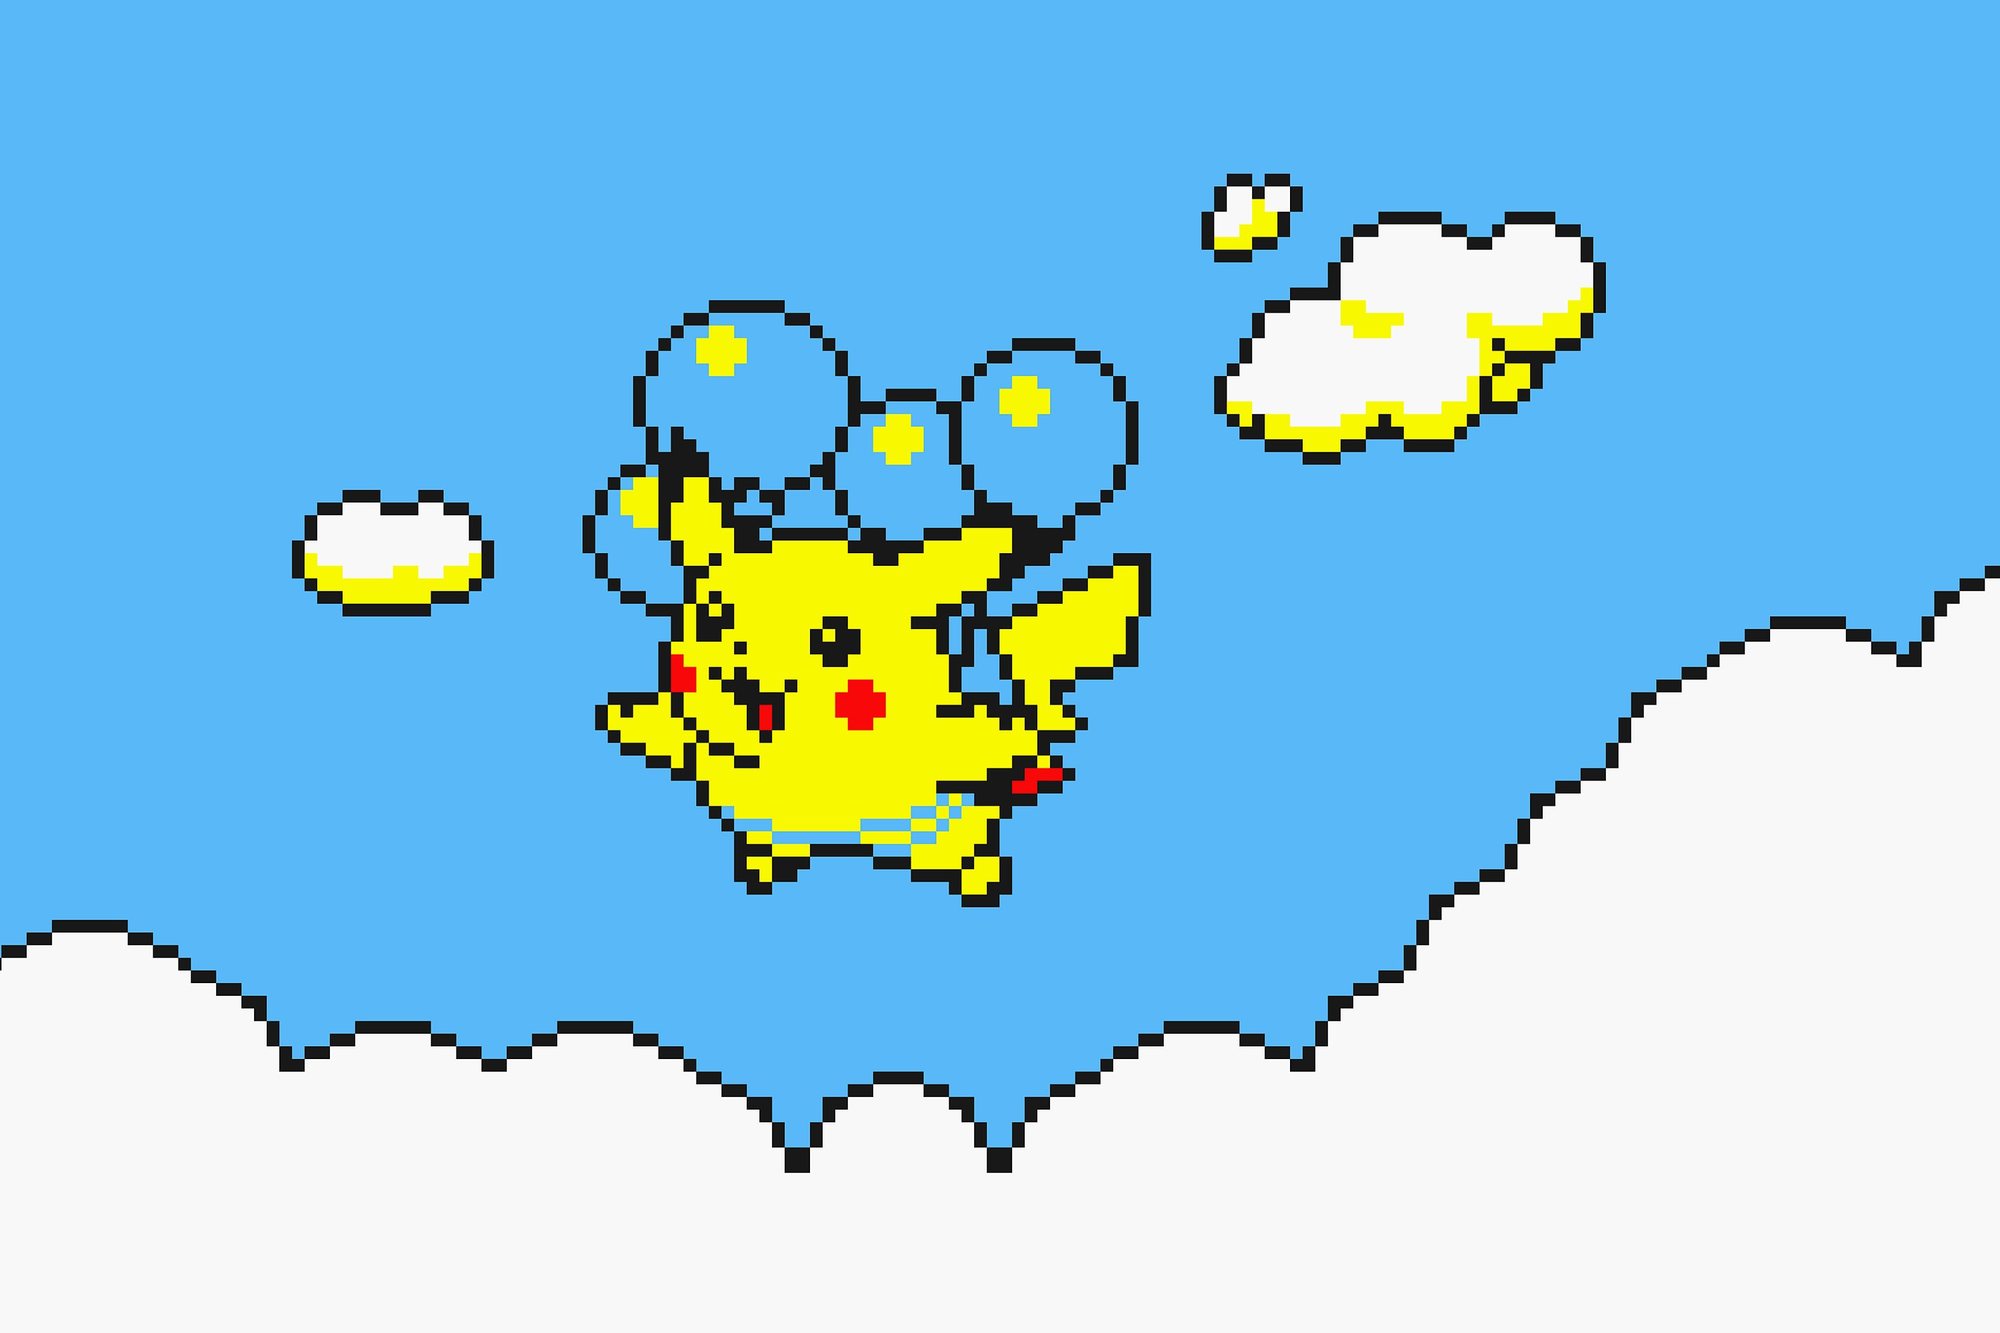 Flying Pikachu is aan de code toegevoegd en heeft daadwerkelijk ballonnen